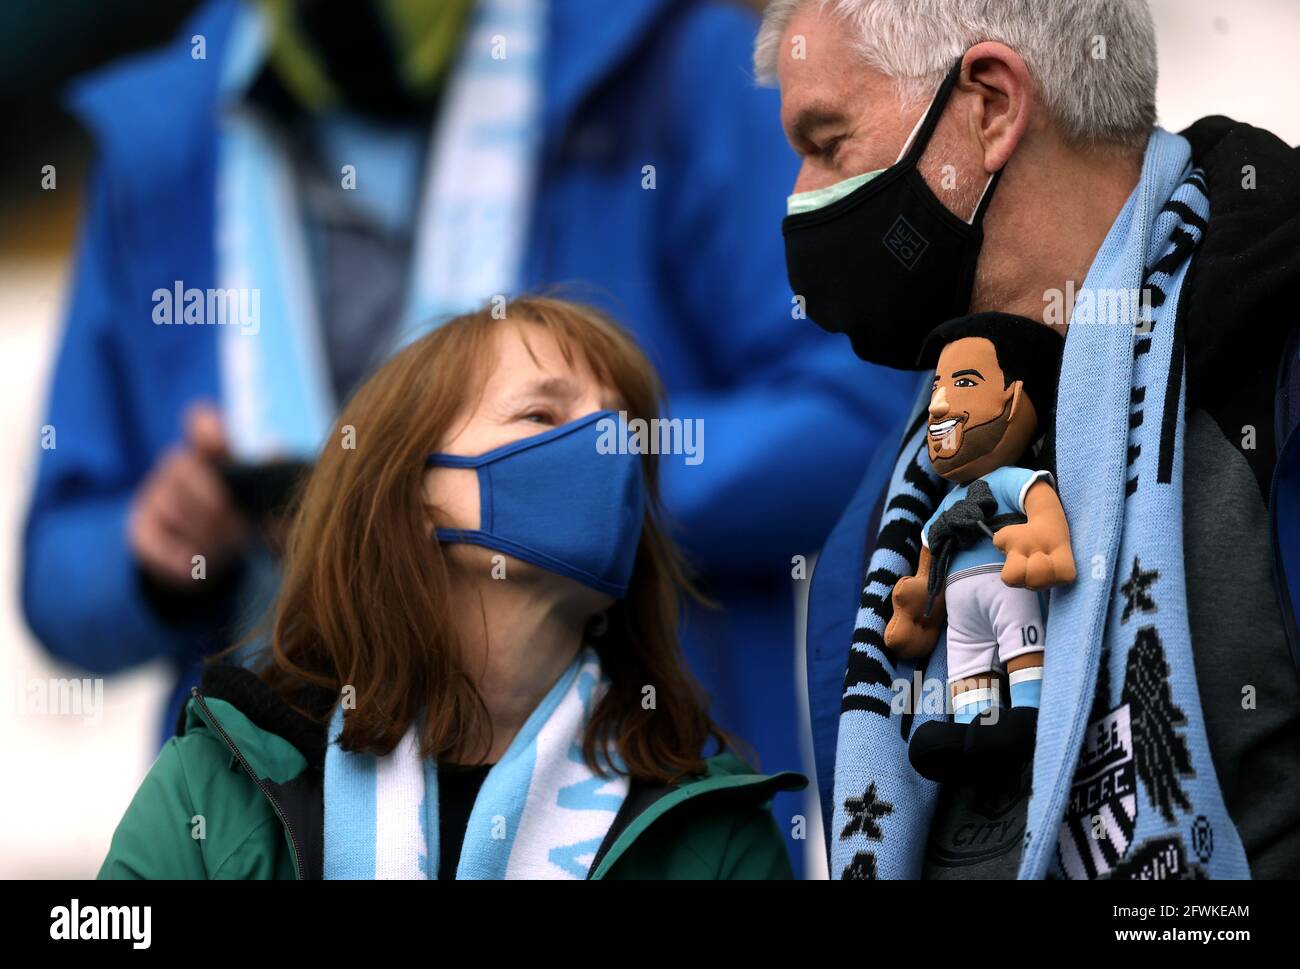 Un fan di Manchester City indossa una figura giocattolo imbottita di Sergio Aguero negli stand durante la partita della Premier League all'Etihad Stadium di Manchester. Data immagine: Domenica 23 maggio 2021. Foto Stock